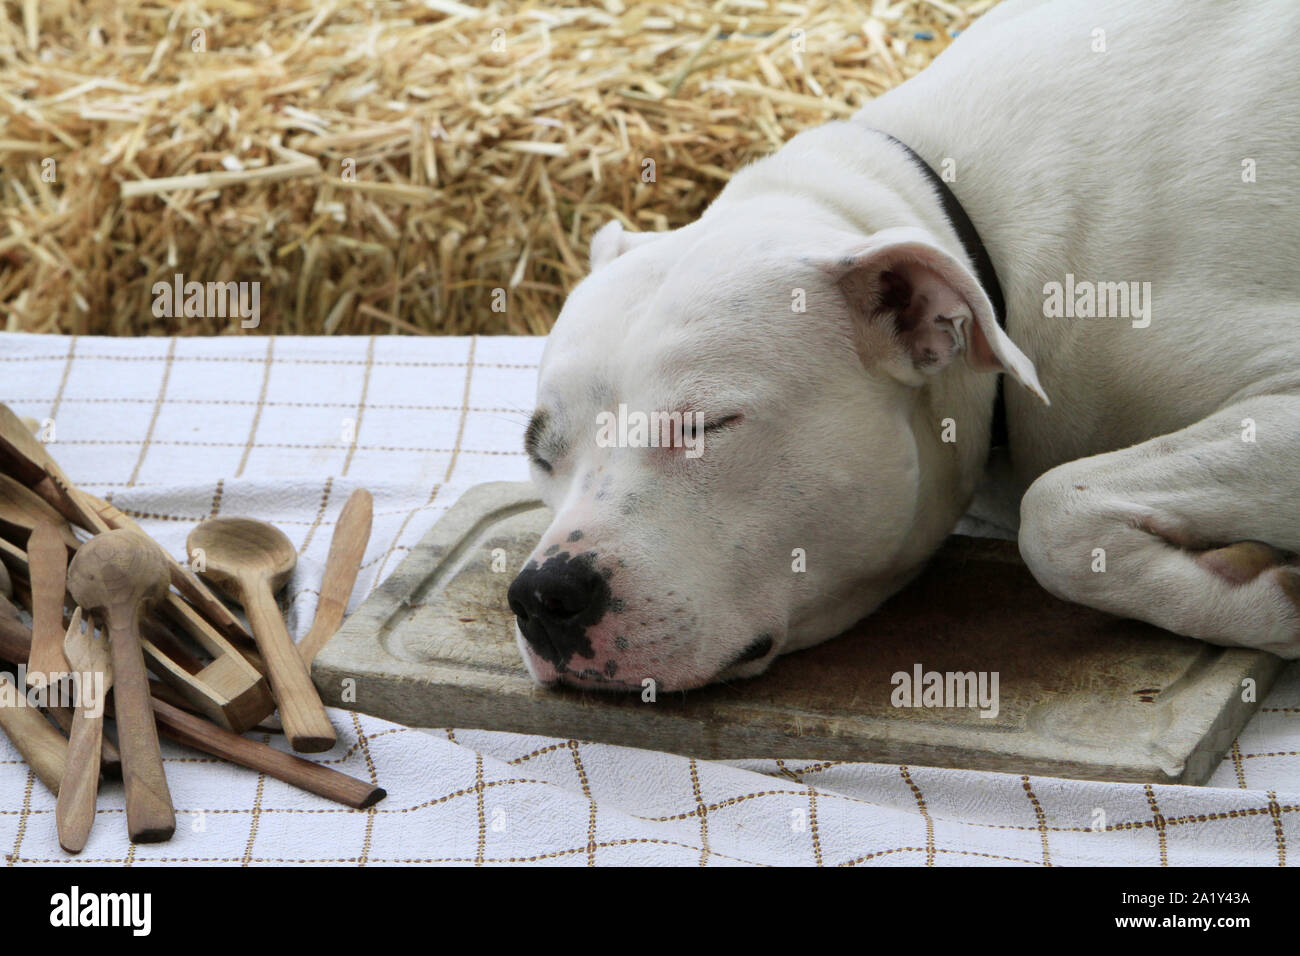 Chien dormant sur une planche en bois de cuisine. Stock Photo